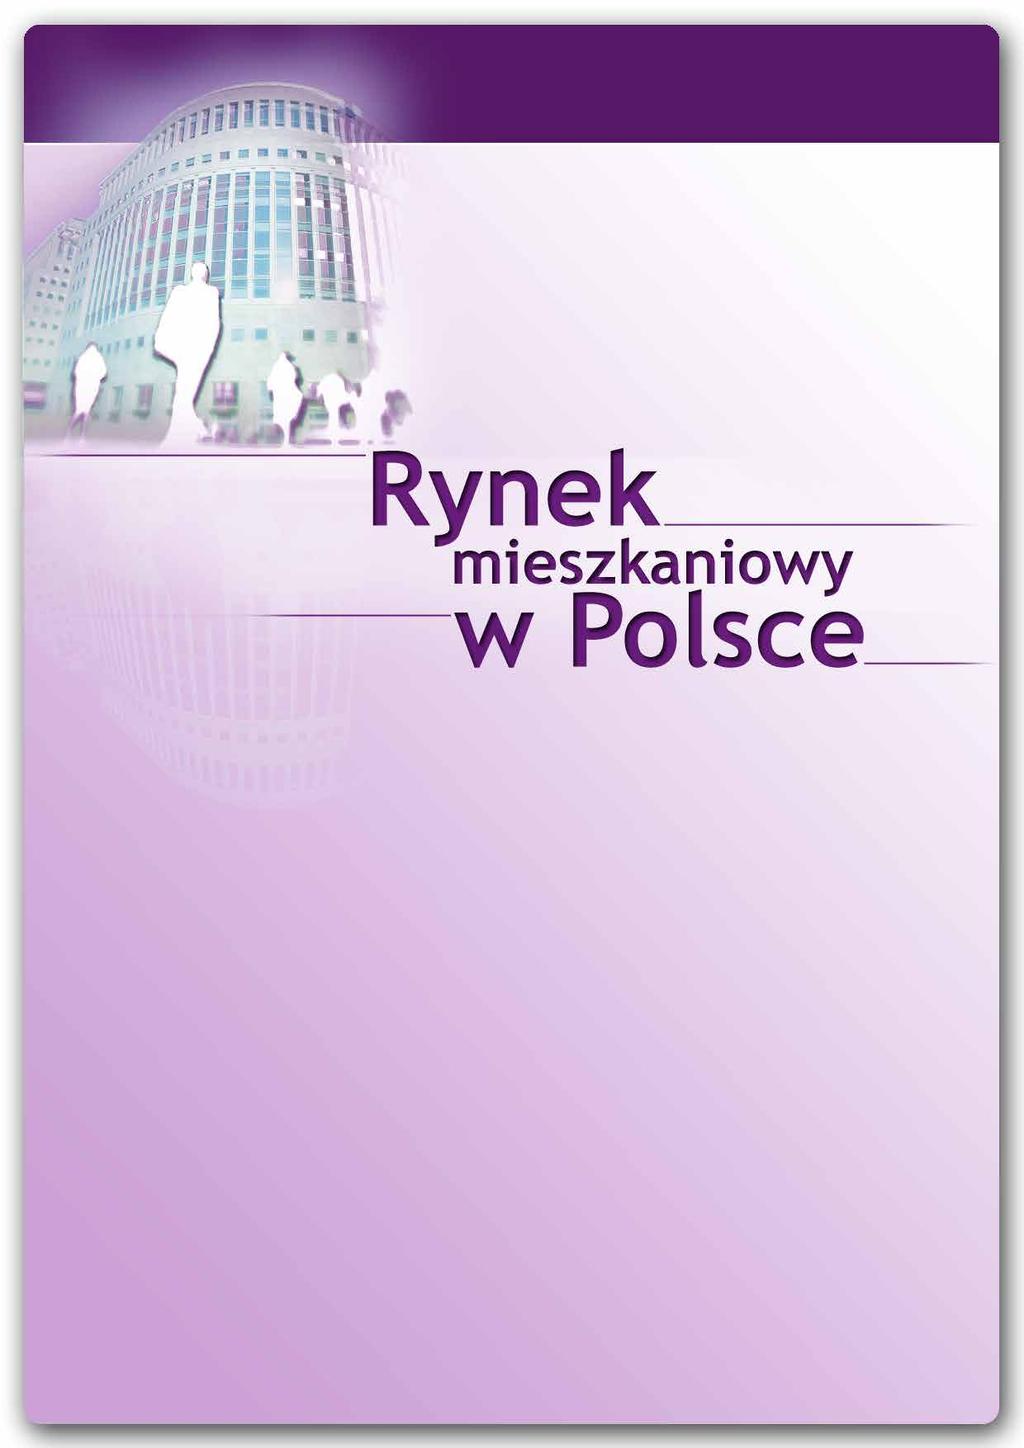 Raport rednet Consulting i tabelaofert.pl sytuacja na rynku mieszkaniowym Październik 2012 rednet Property Group Sp. z o.o. z siedzibą przy ul.